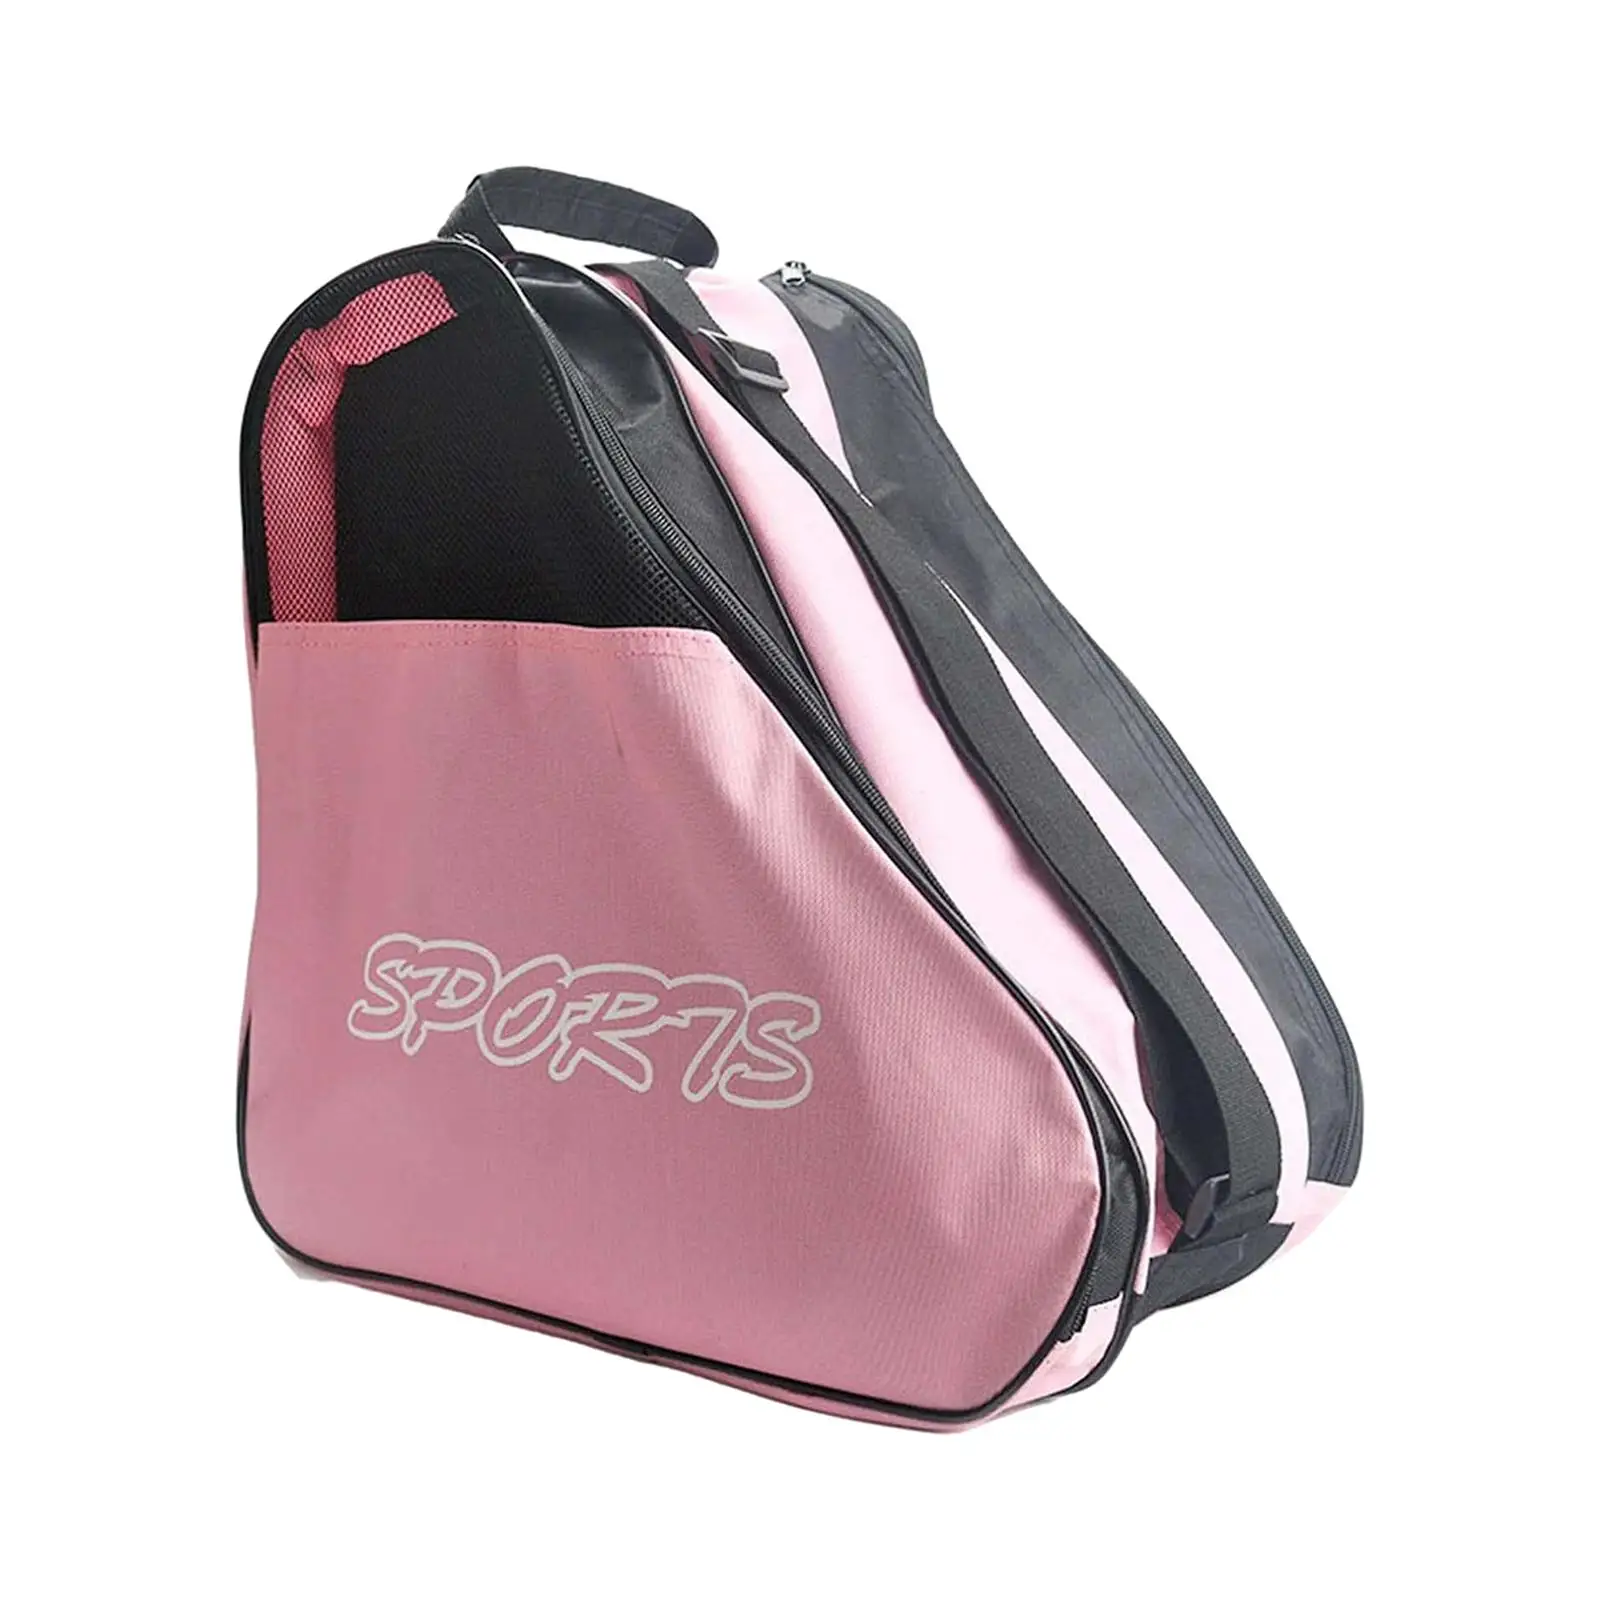 Roller Skates Bag Adjustable Shoulder Strap Durable Large Capacity Skating Shoes Bag for Boys Women Teenager Girls Children